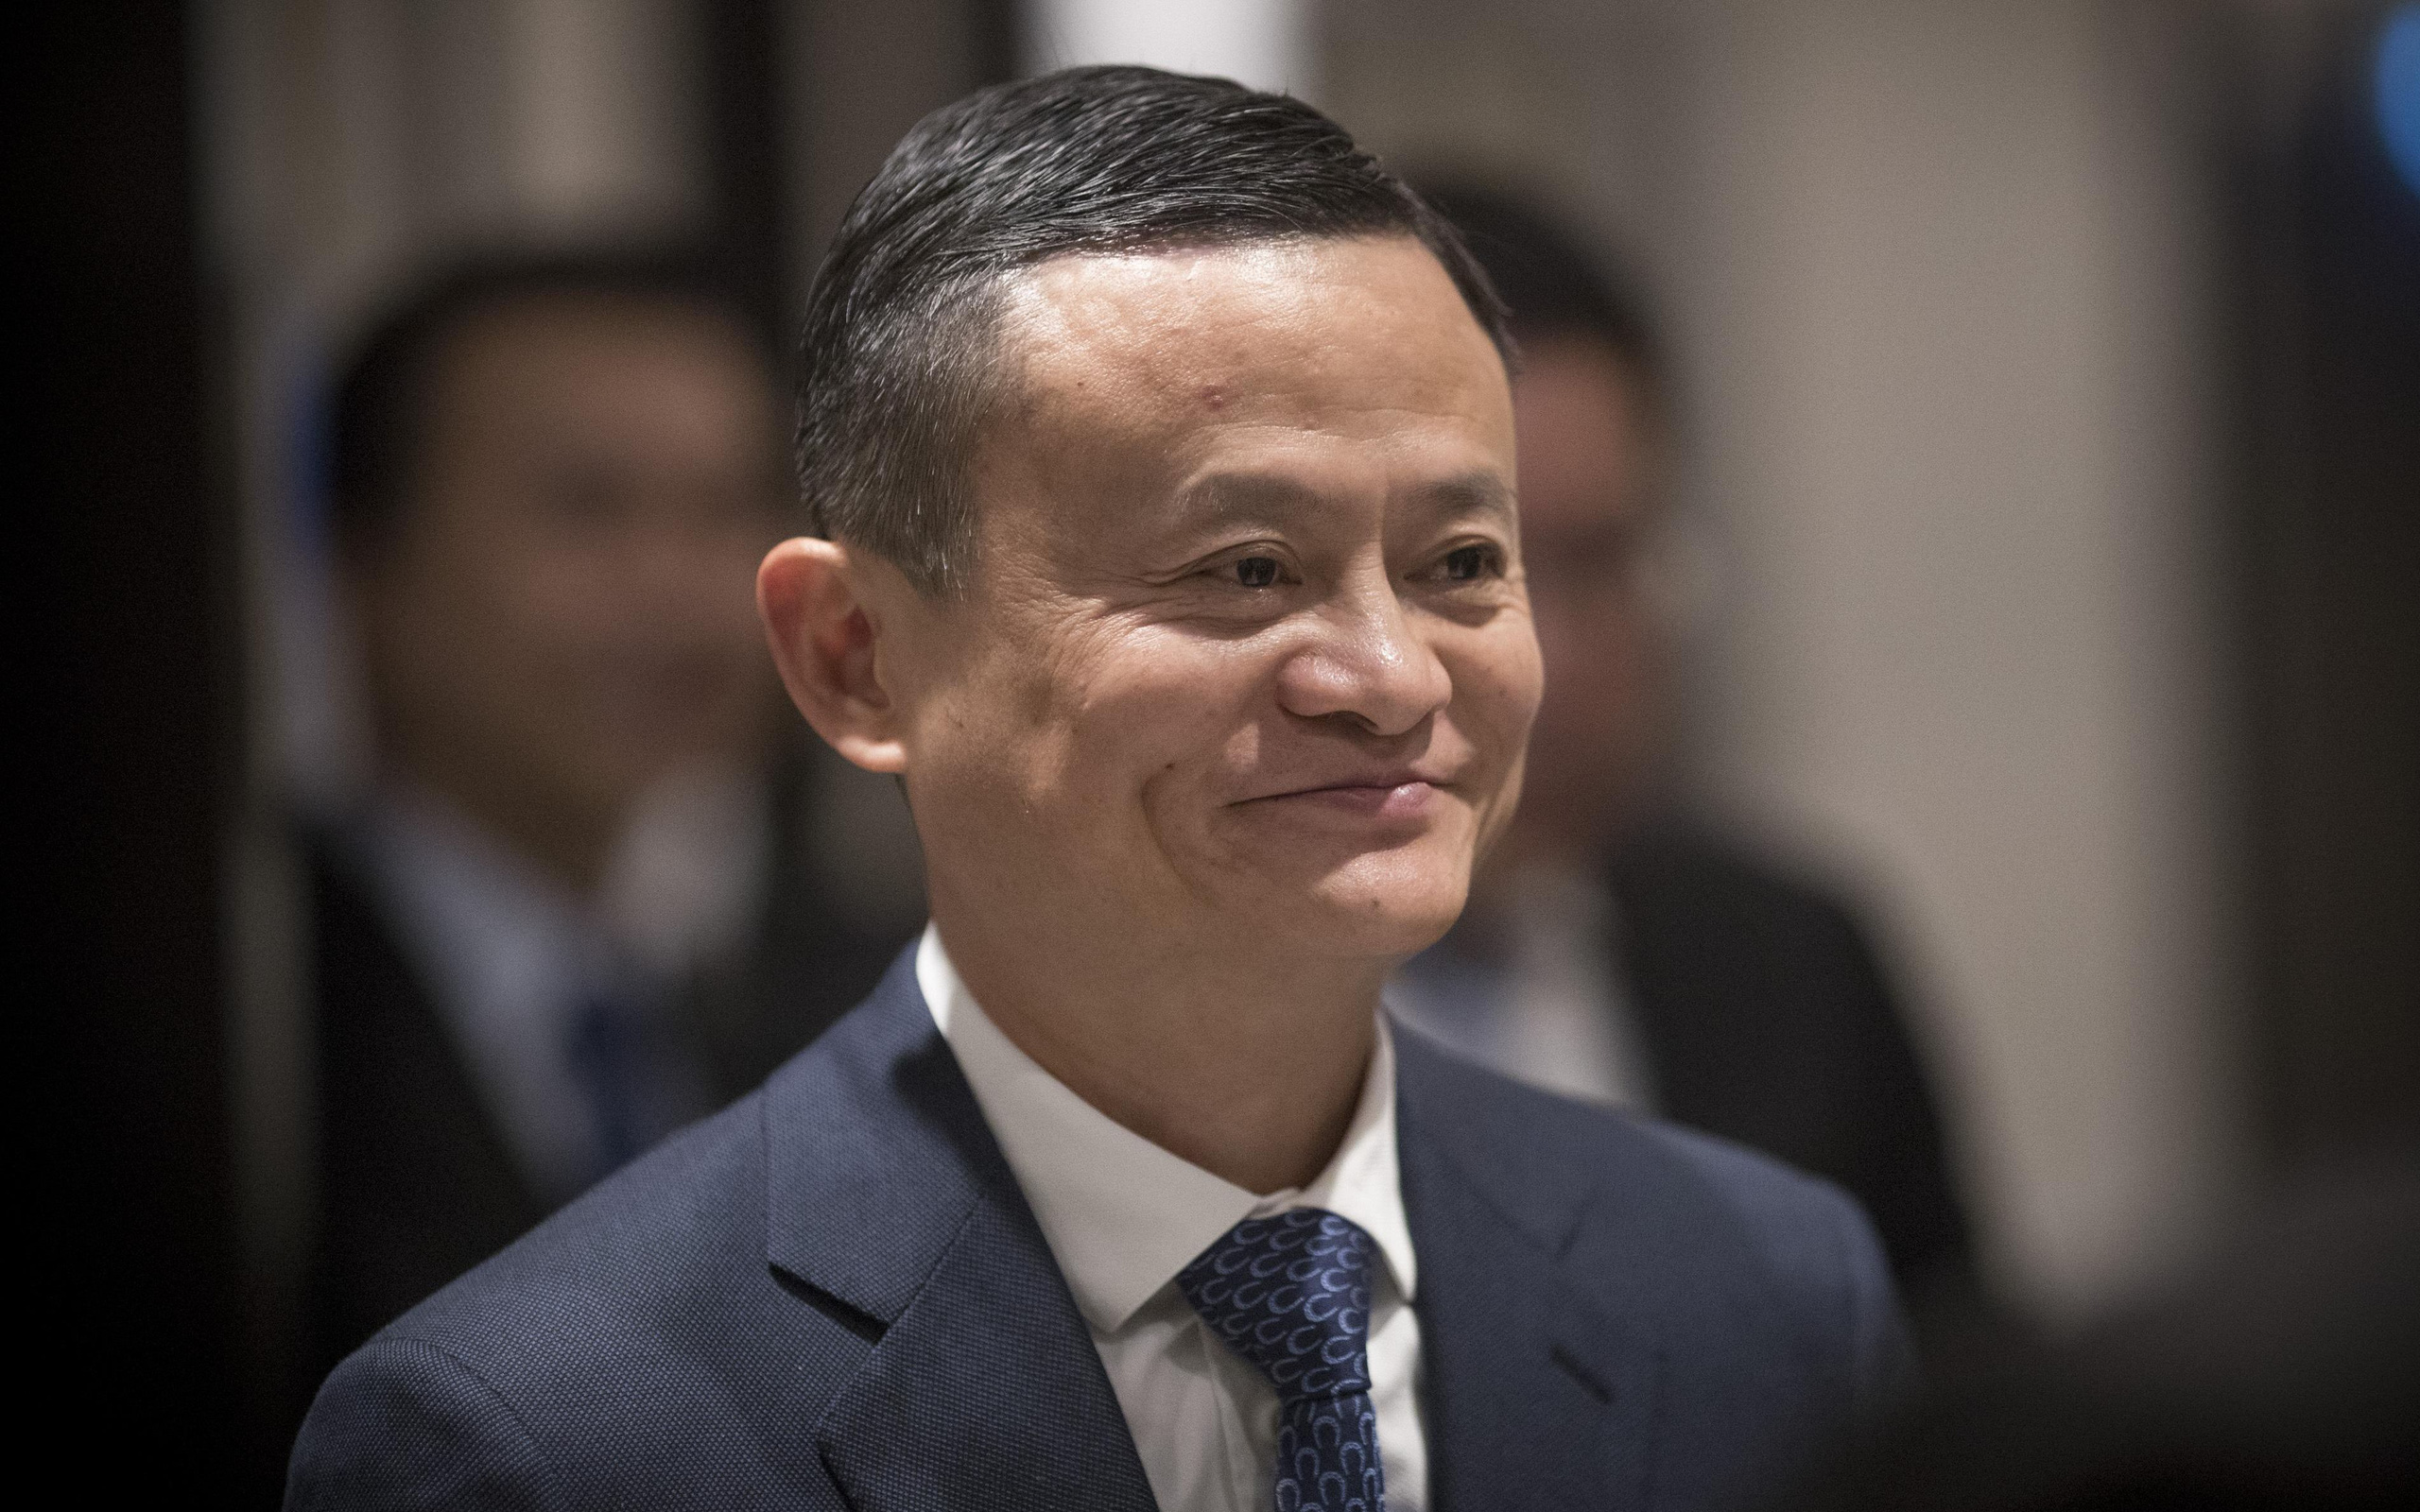 Jack Ma dự báo 6 ngành nghề sắp bốc hơi trong một ngày không xa, đọc ngay để tương lai không lo thất nghiệp - Ảnh 1.